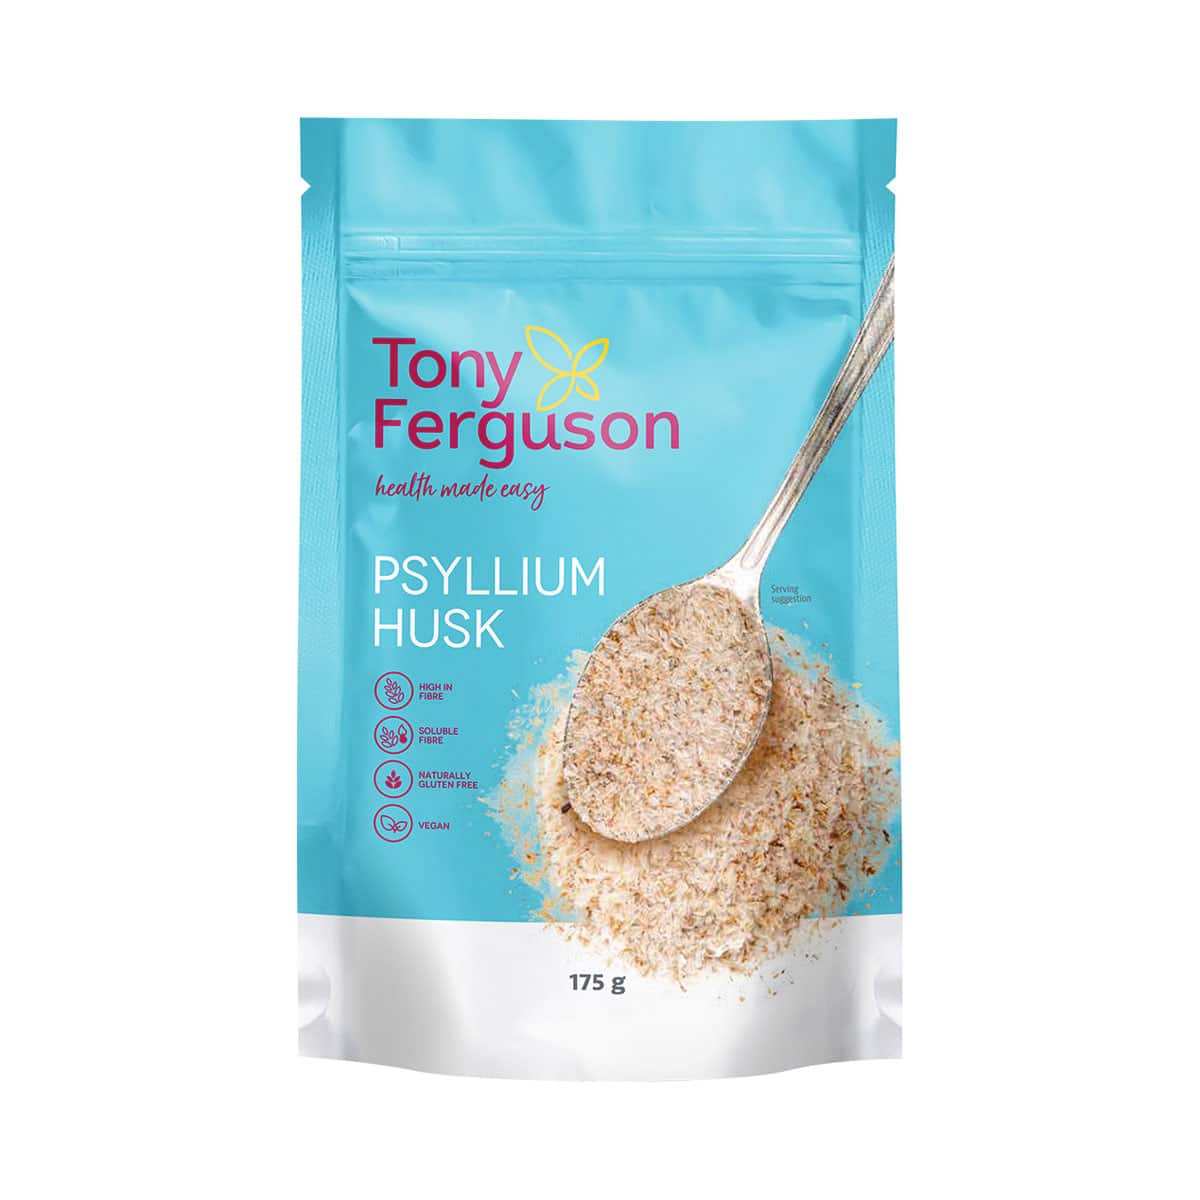 Tony Ferguson Psyllium Husk - 175g